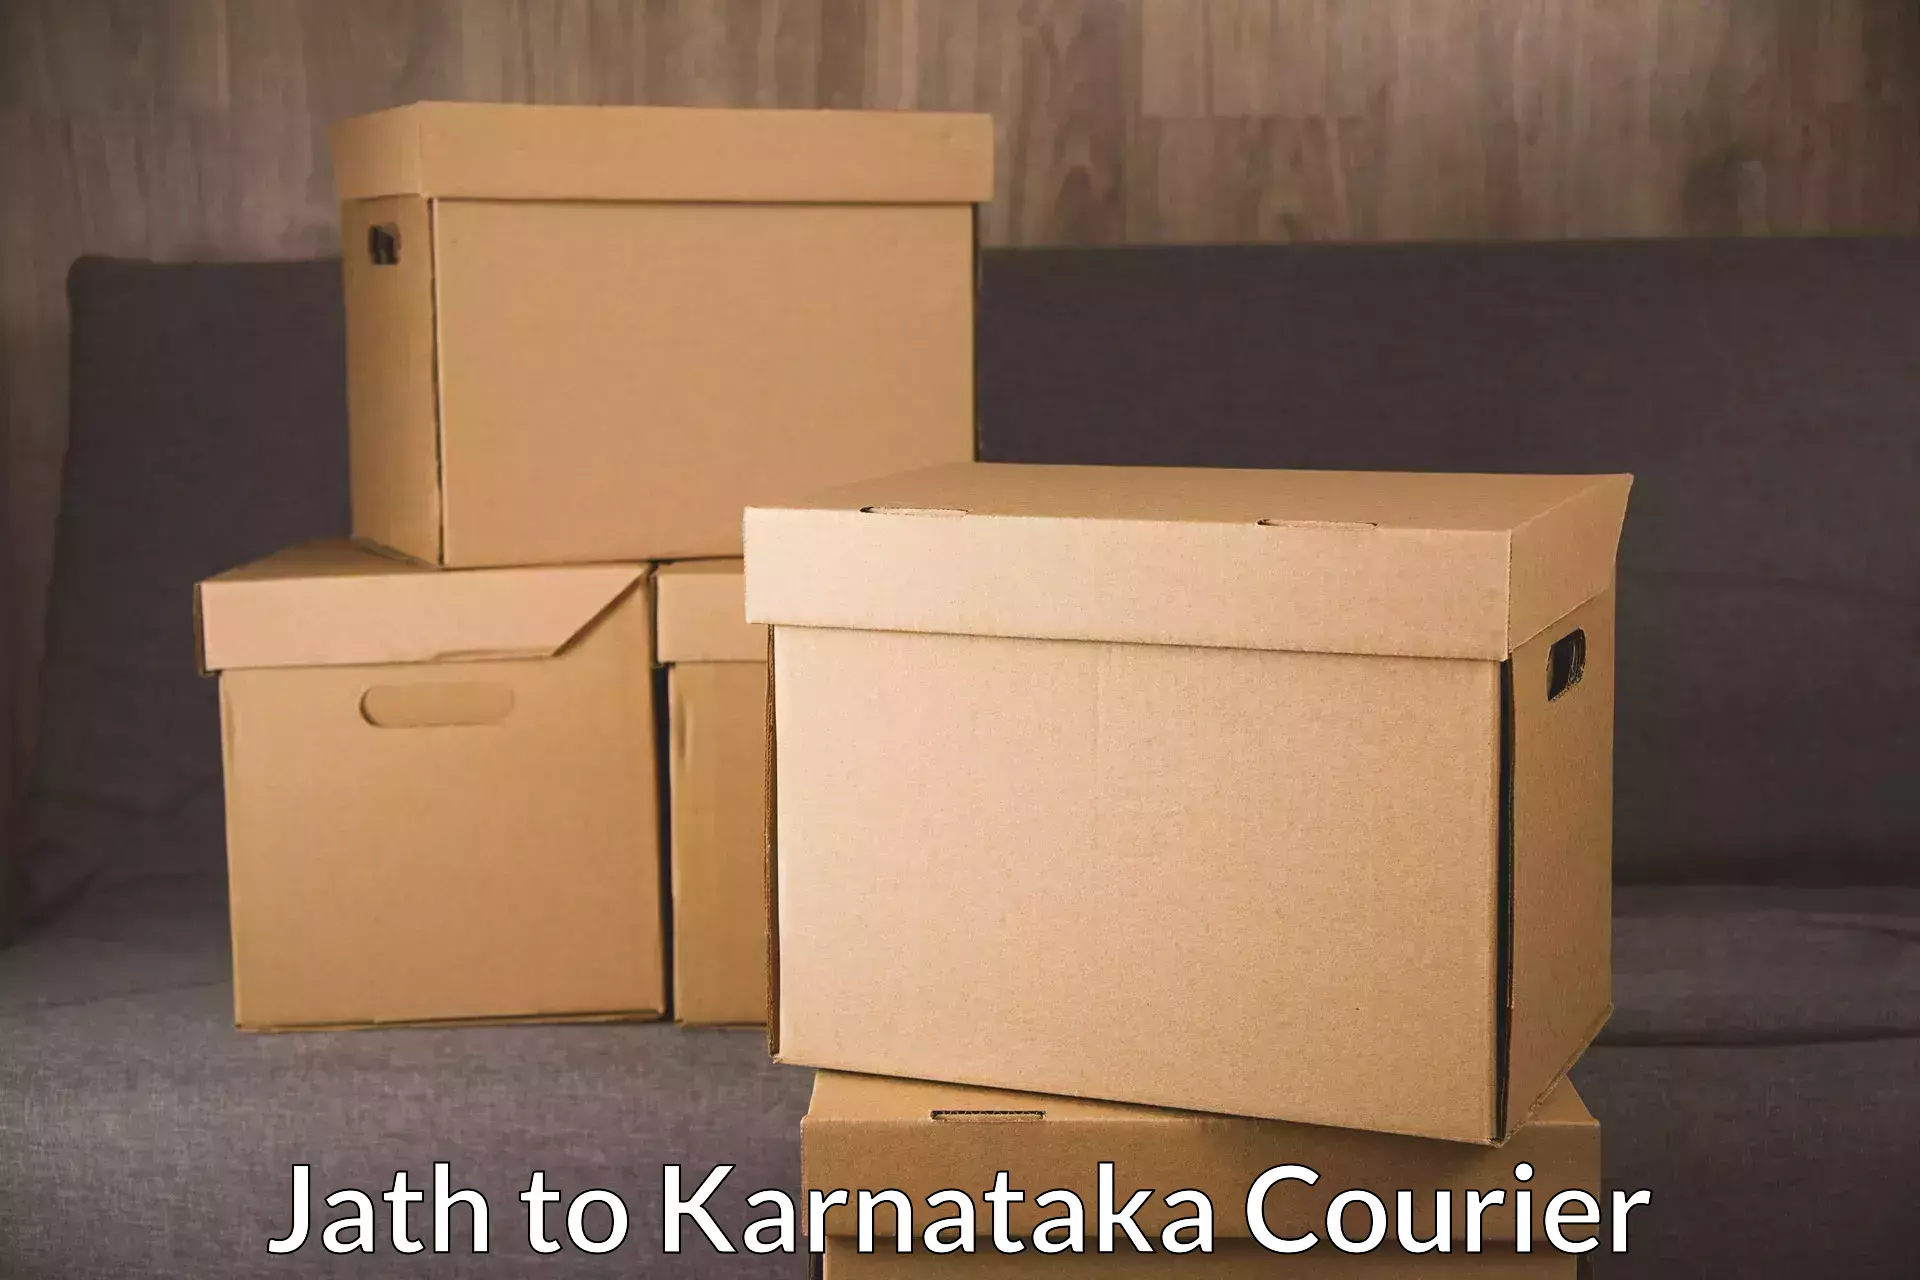 Express package handling Jath to Karnataka